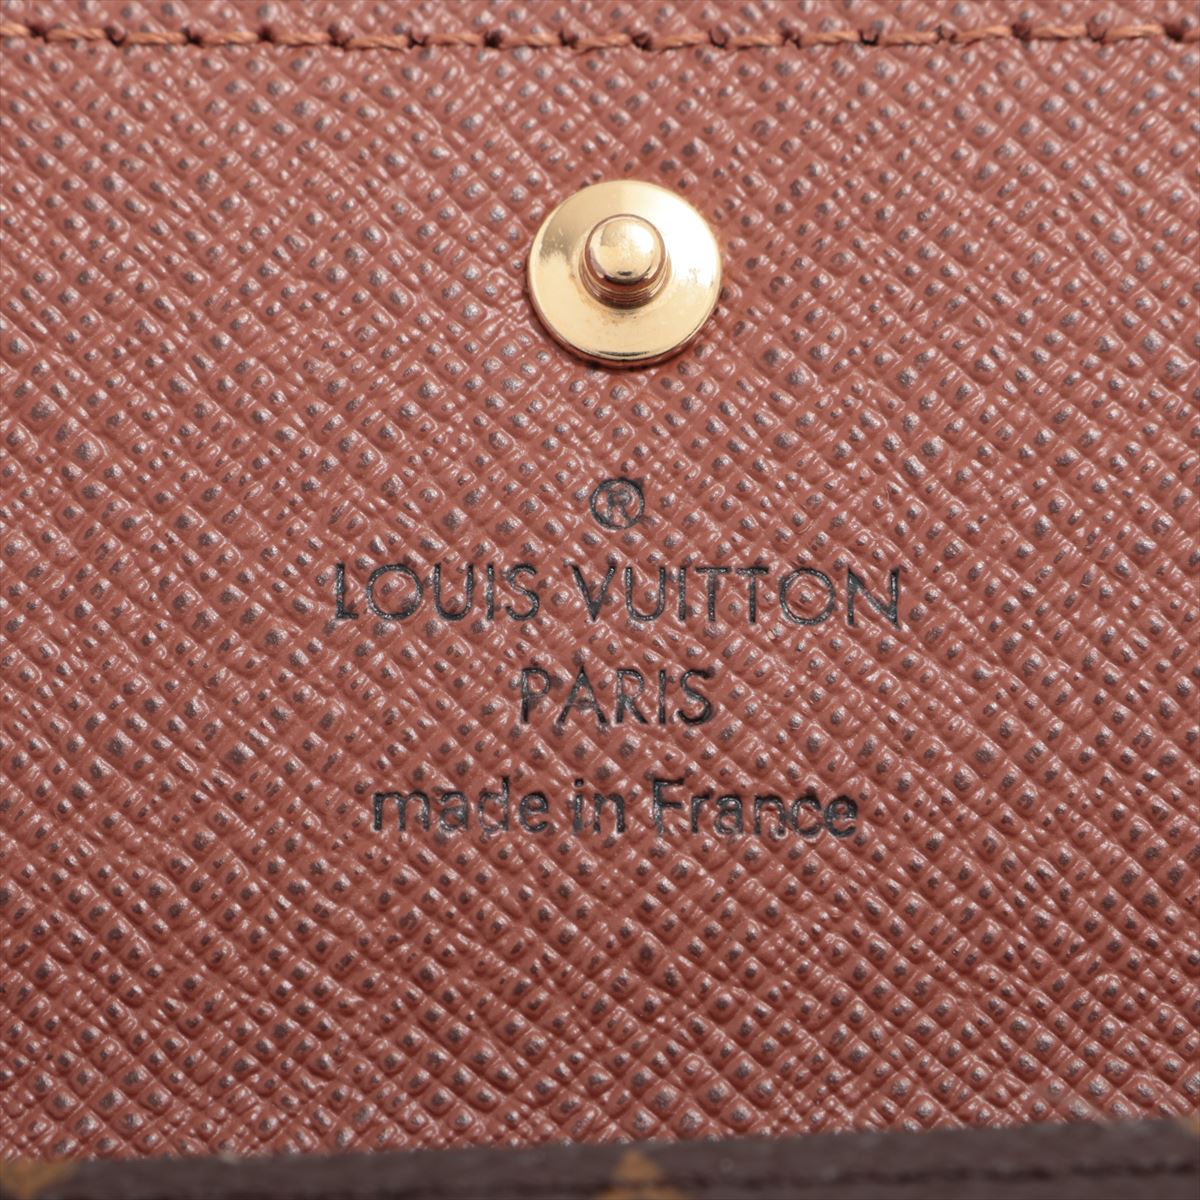 Louis_Vuitton Monogram Multi_Key 4 M69517 Brown Keycase